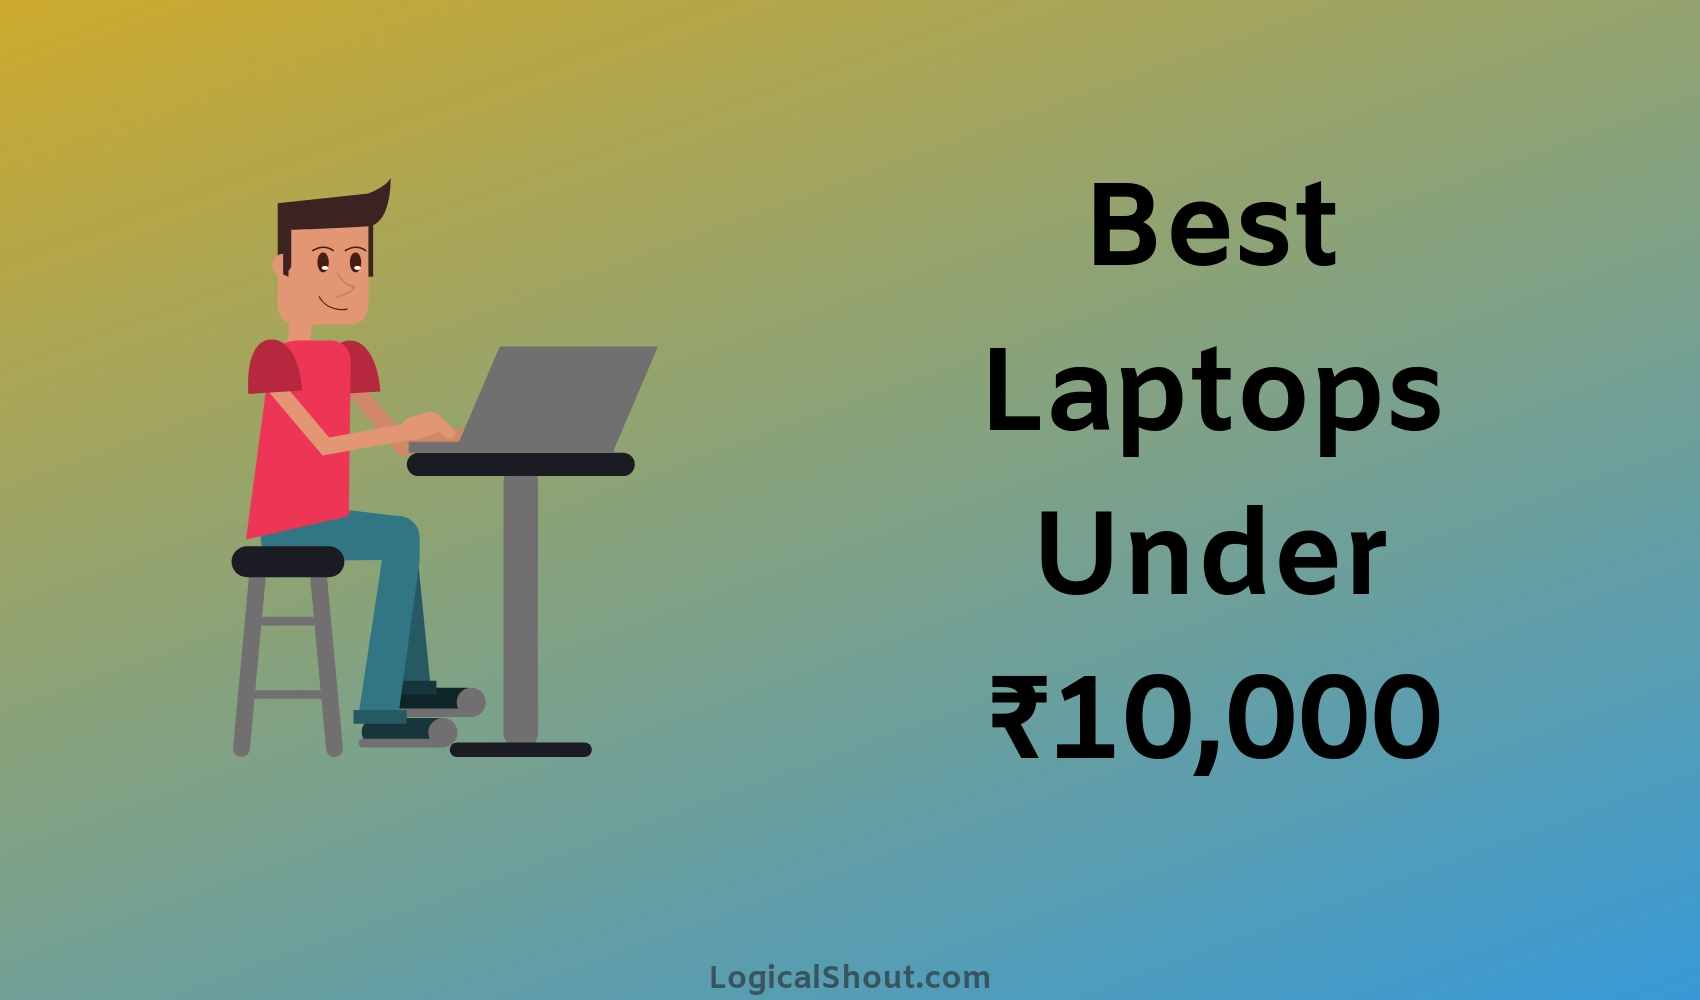 best laptops under 10000